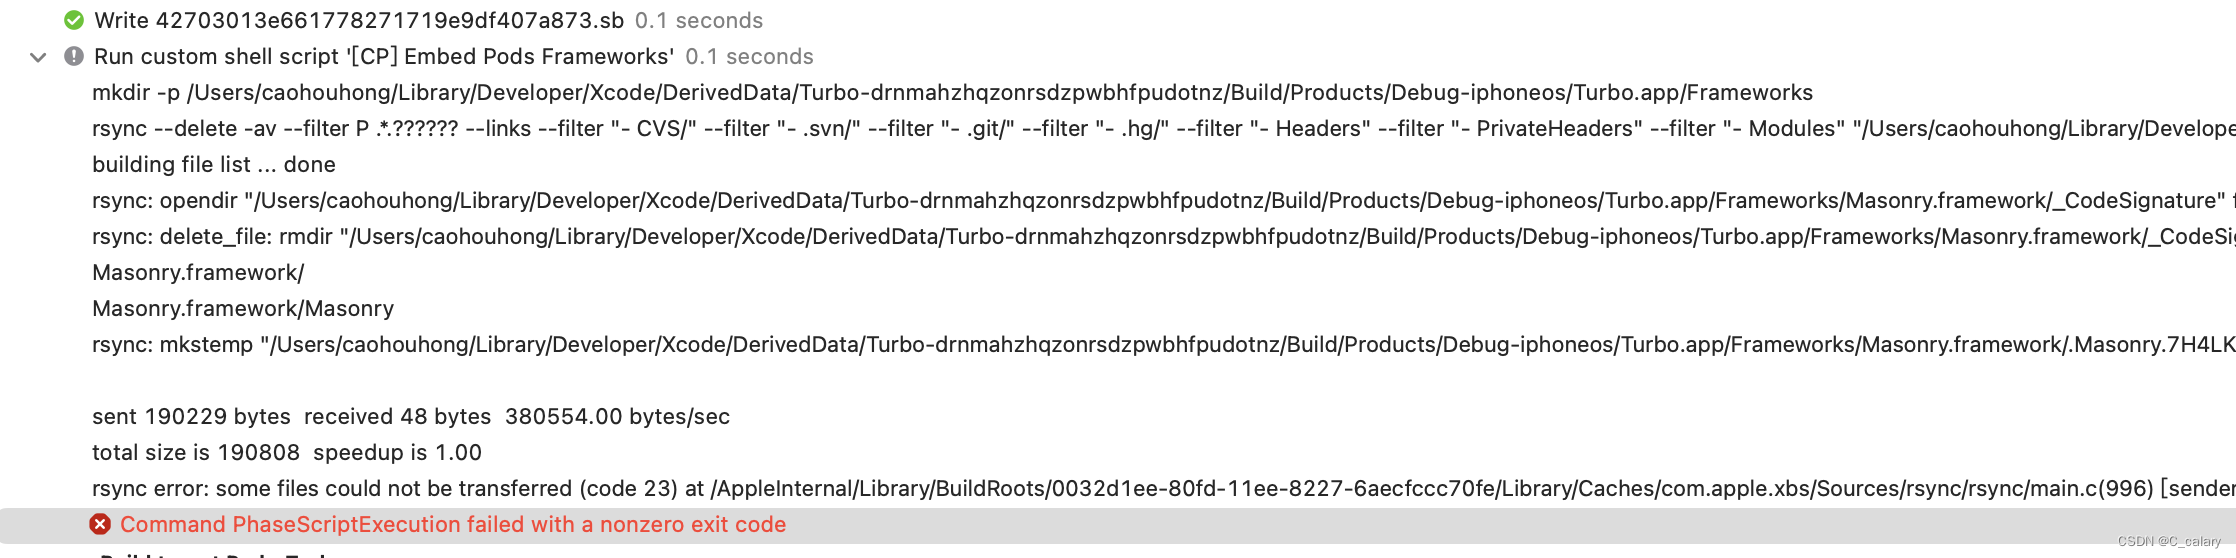 Xcode15 升级问题记录